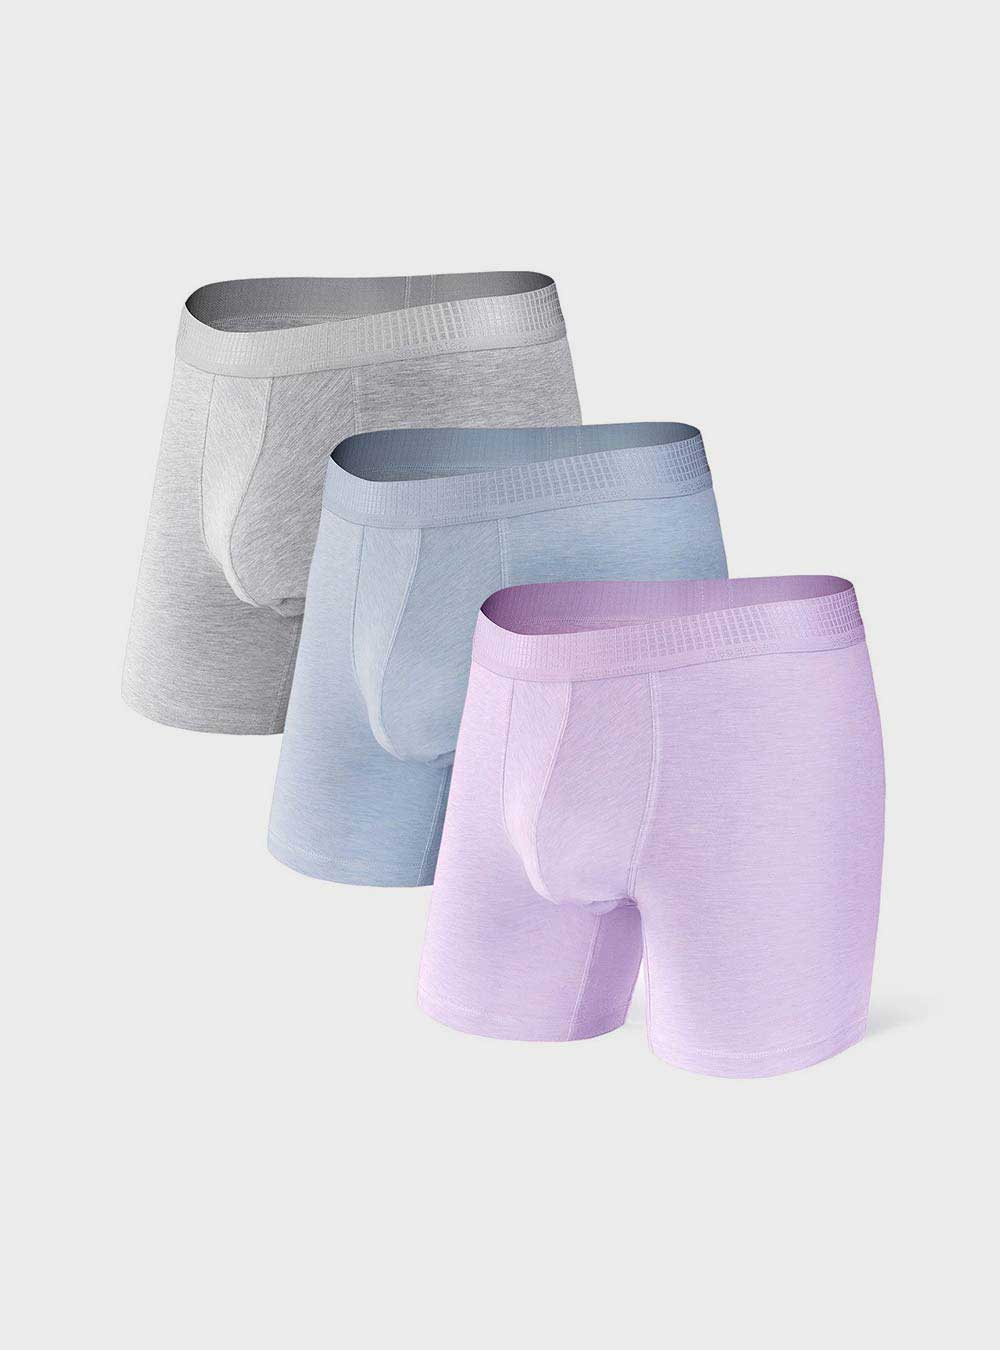 Separatec Cotton Dual Pouch Men's Underwear India